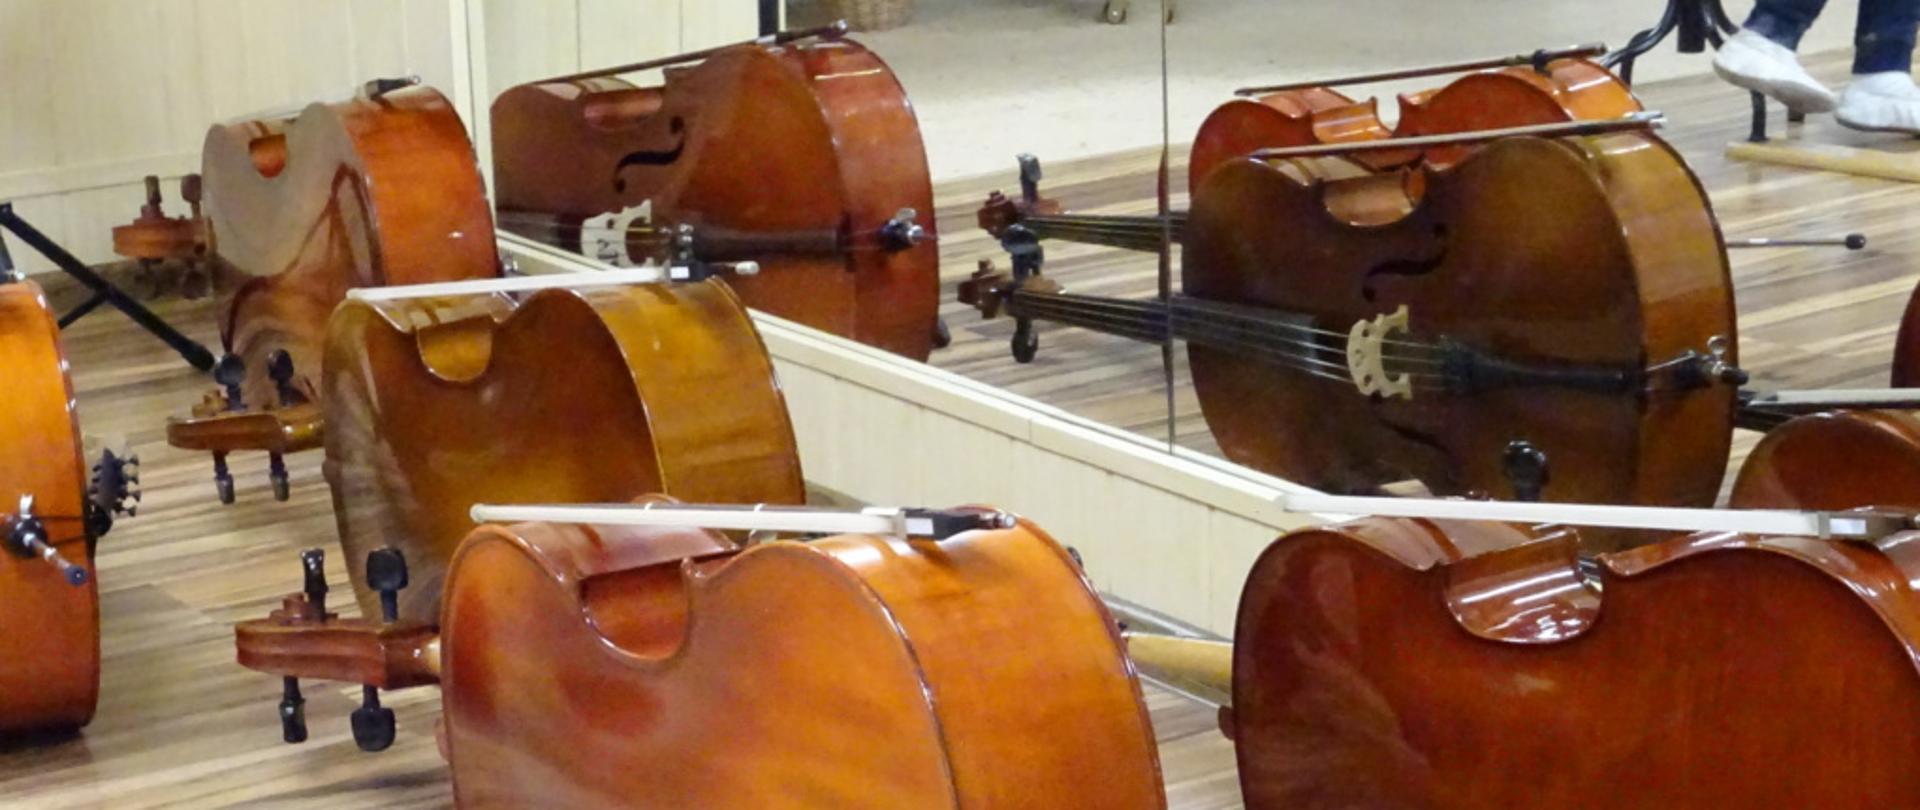 Zdjęcie przedstawia wiolonczele leżące na podłodze w lustrzanym odbiciu